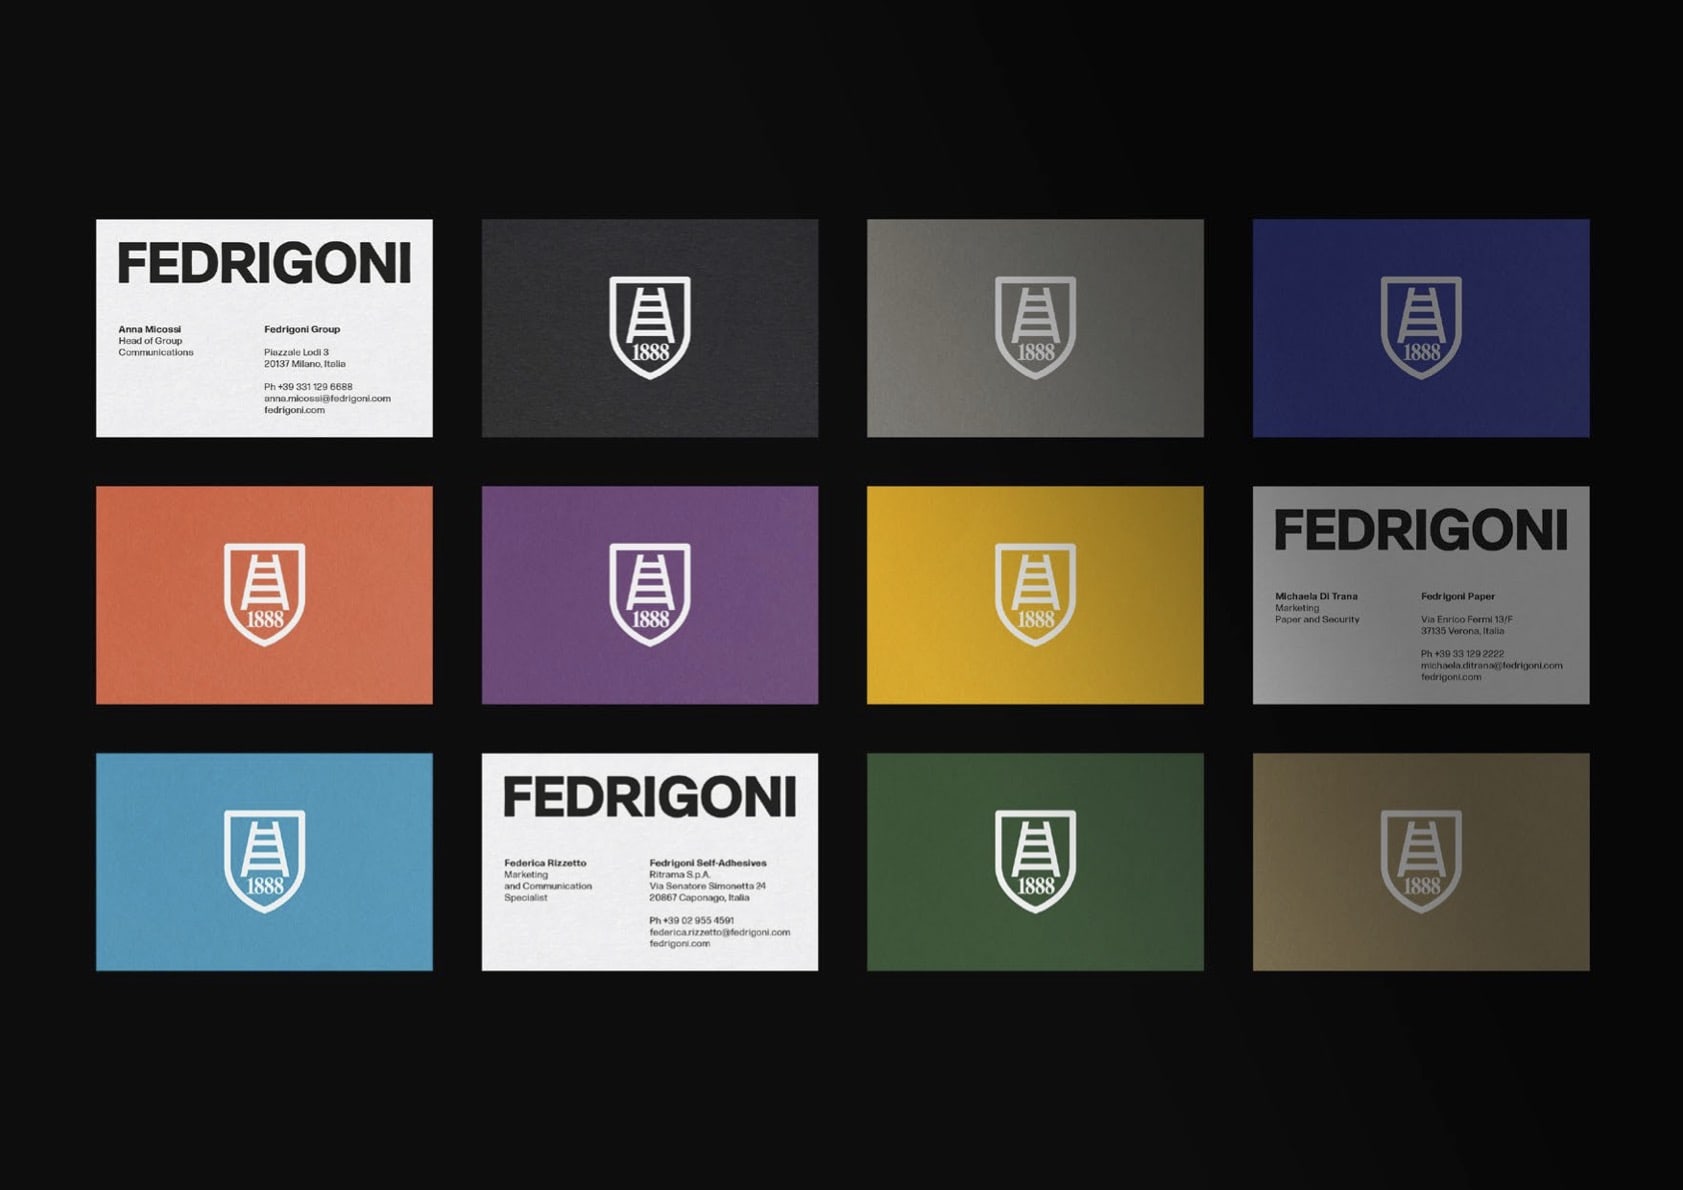 pentagram-nuova-brand-identity-fedrigoni-9